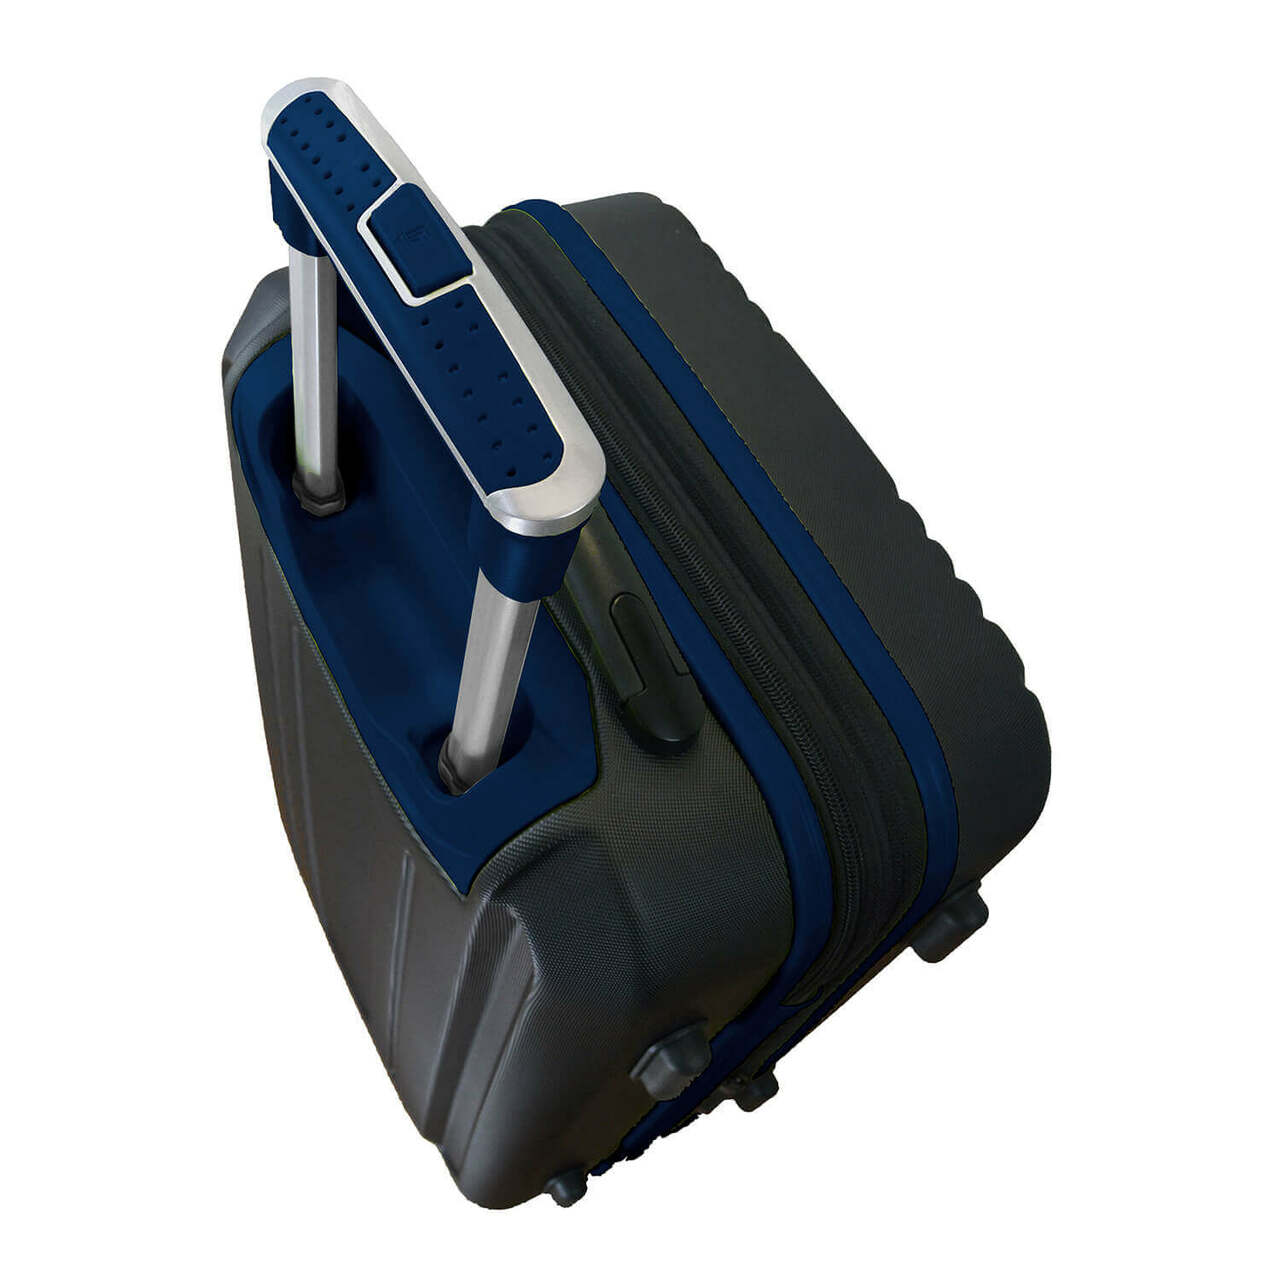 Auburn Carry On Spinner Luggage | Auburn Hardcase Two-Tone Luggage Carry-on Spinner in Navy